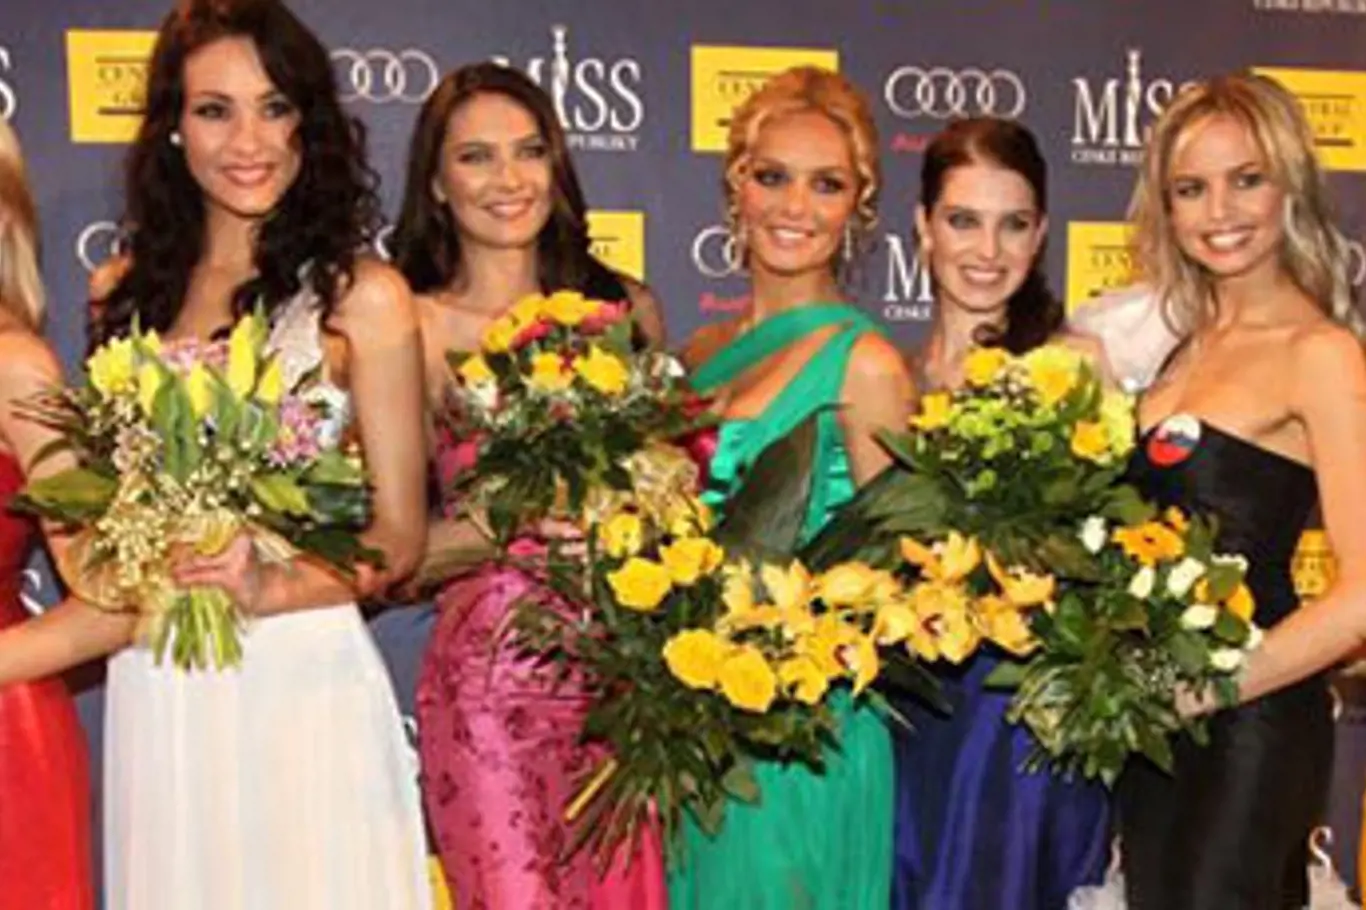 Dne 10.dubna 2010 byl zahájen nový ročník soutěže MISS České republiky 2010 